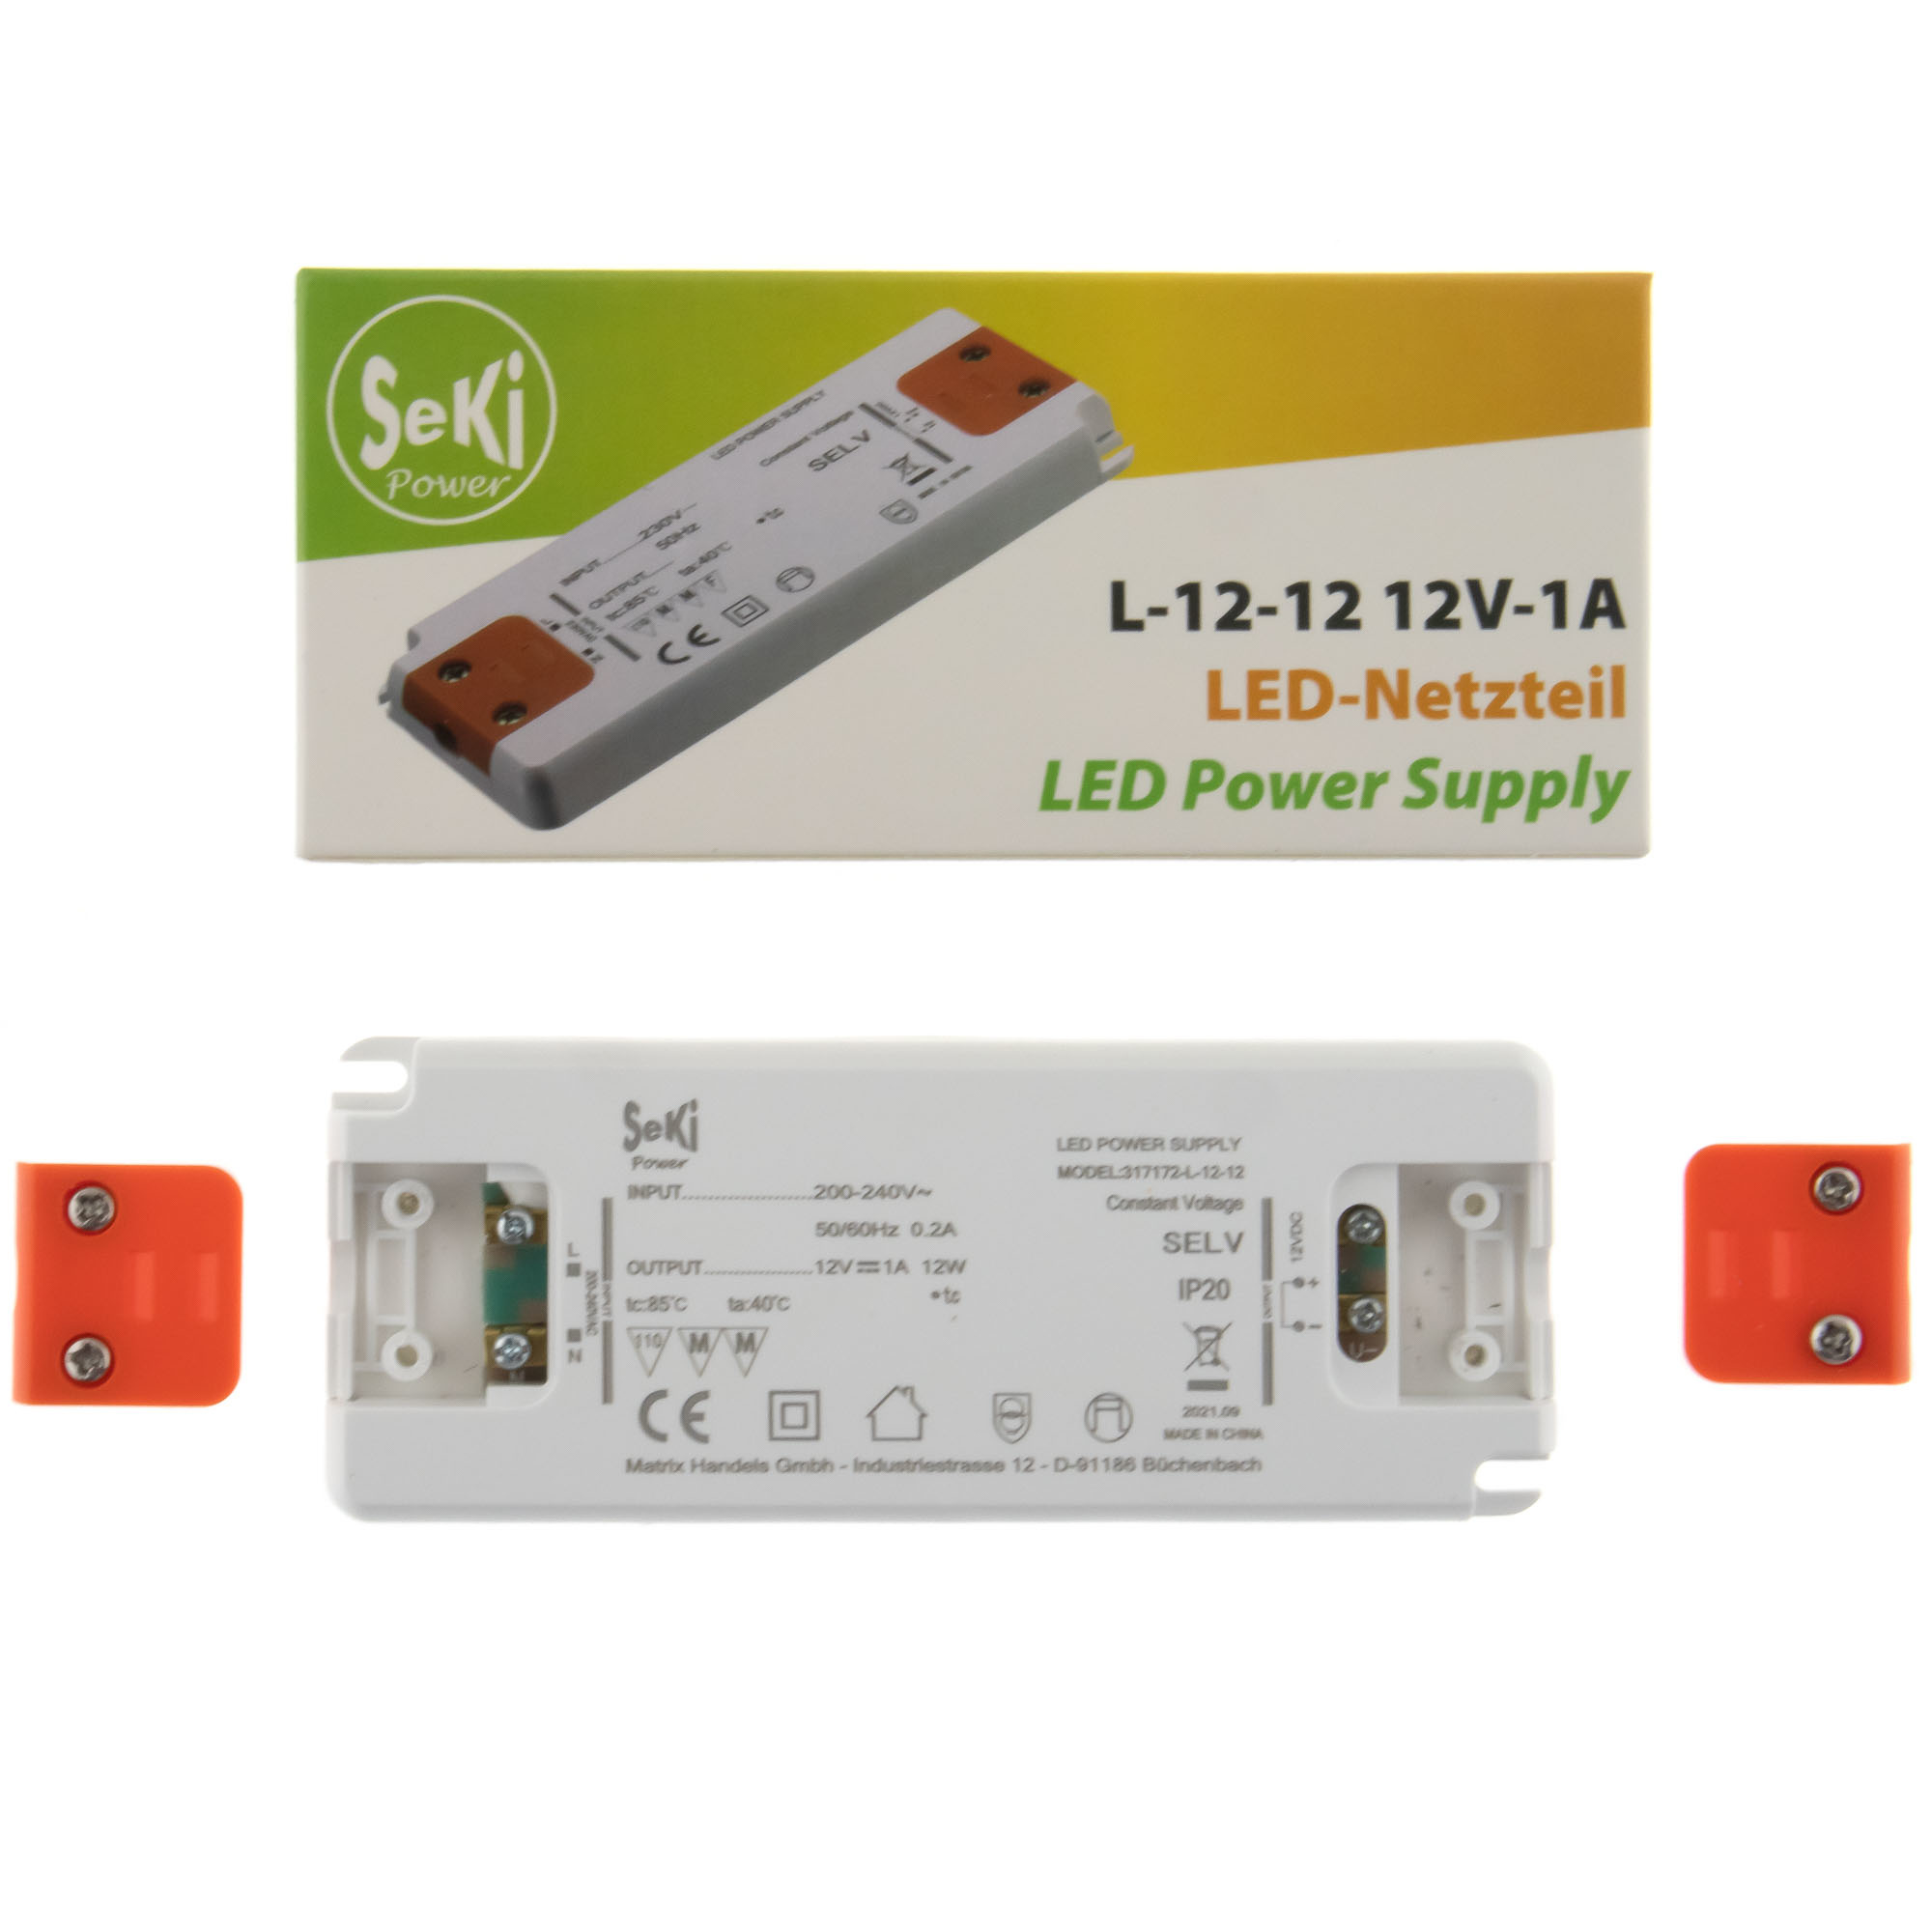 LED power supply L-12-12 - 12V - 1A - 12W